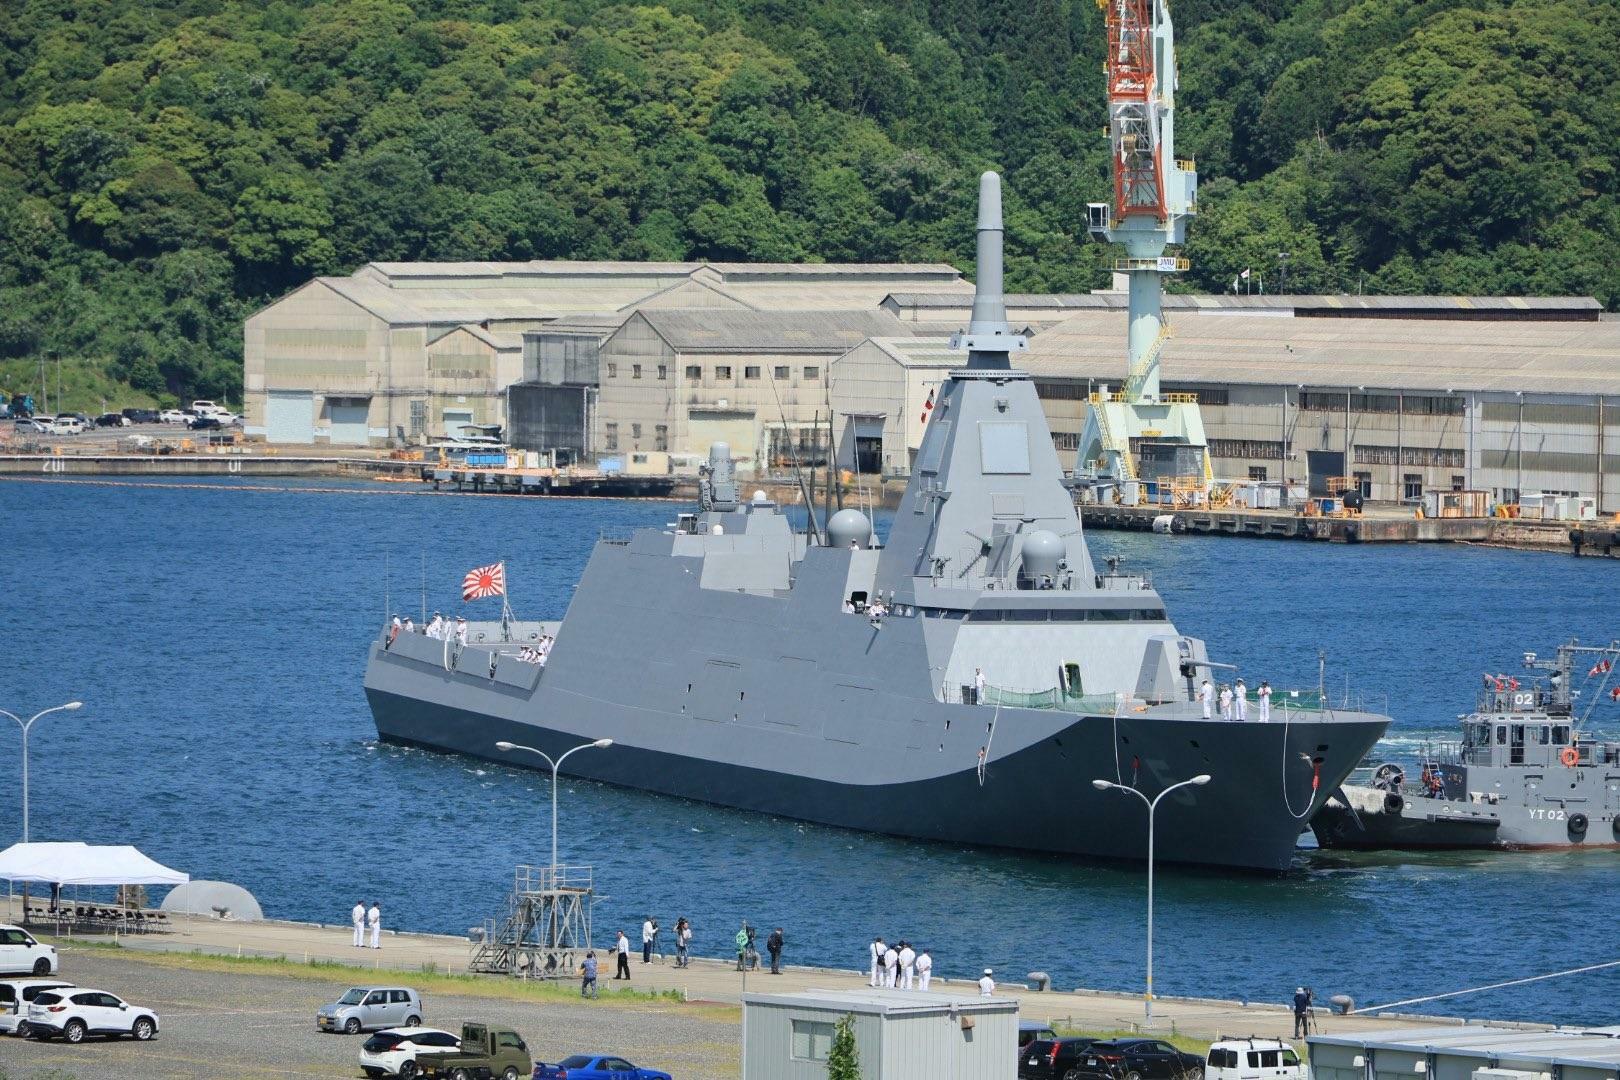 5月21日の就役後、初めて海自舞鶴基地に入港するもがみ型護衛艦（FFM）5番艦「やはぎ」（自衛隊協力会 はぎの会撮影、提供）